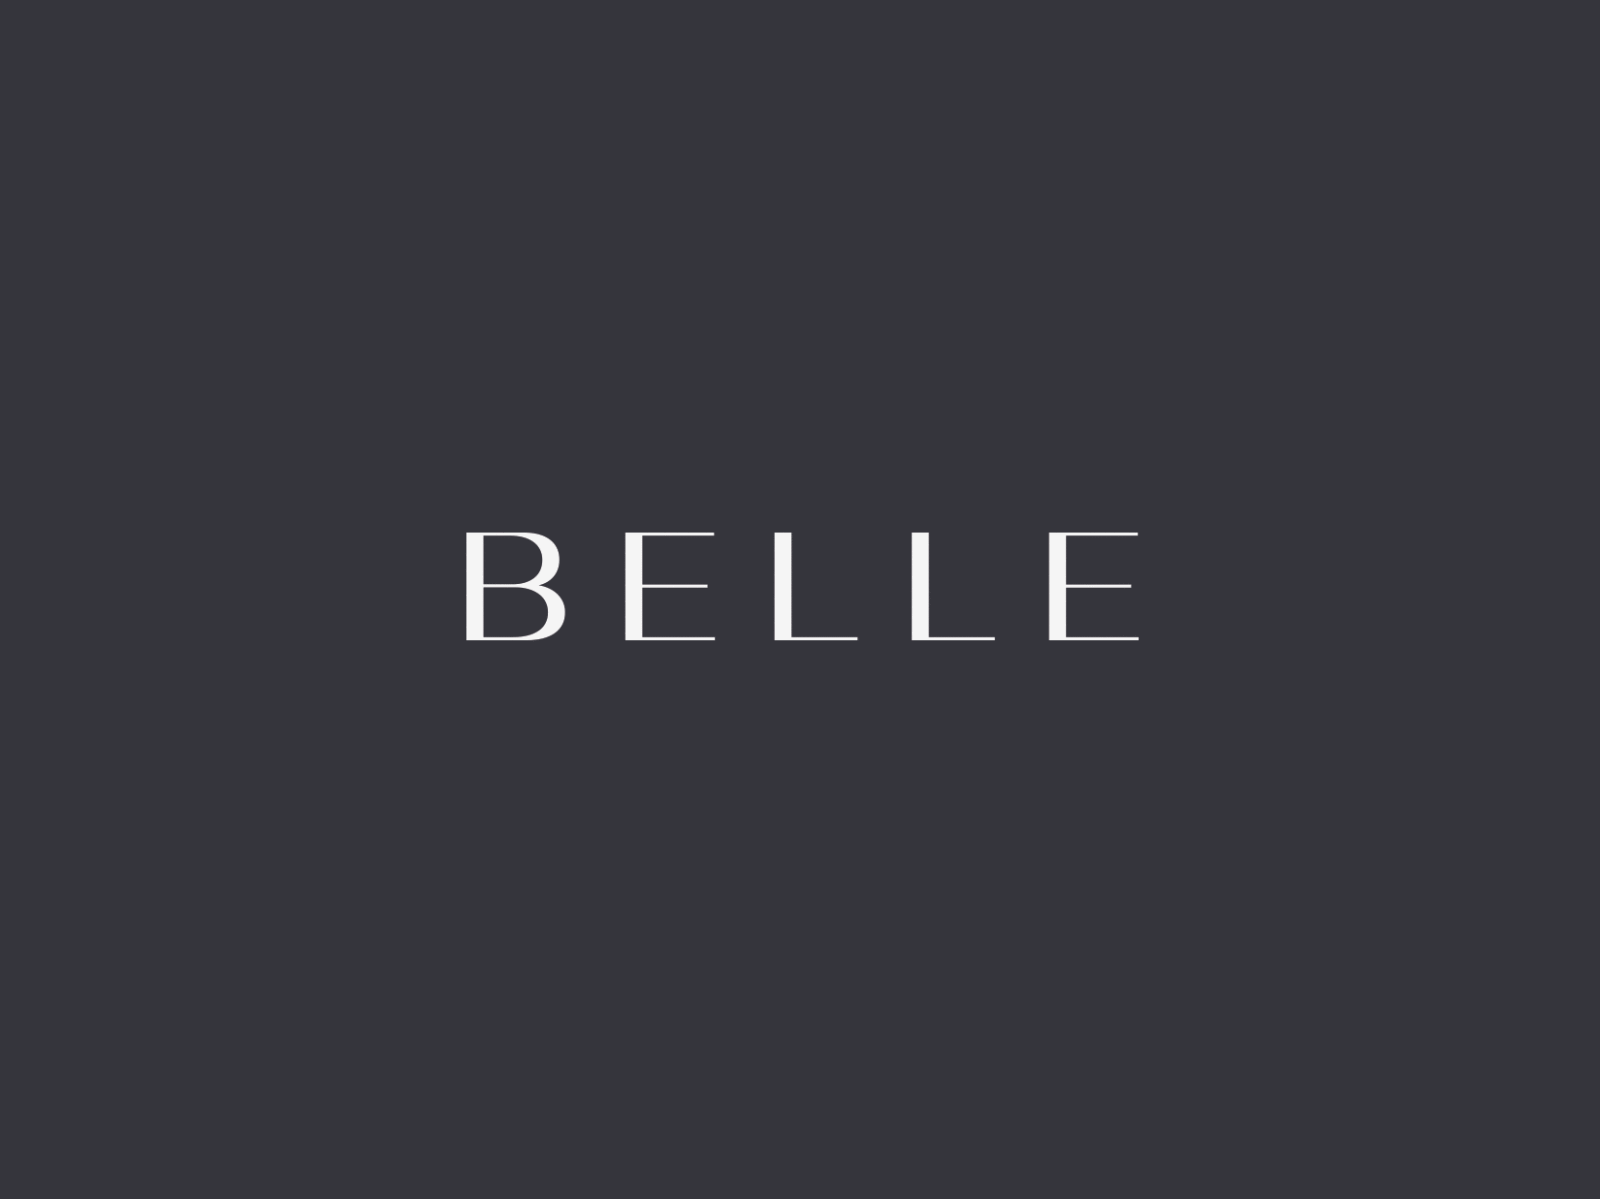 Belle by Christophe De Pelsemaker on Dribbble